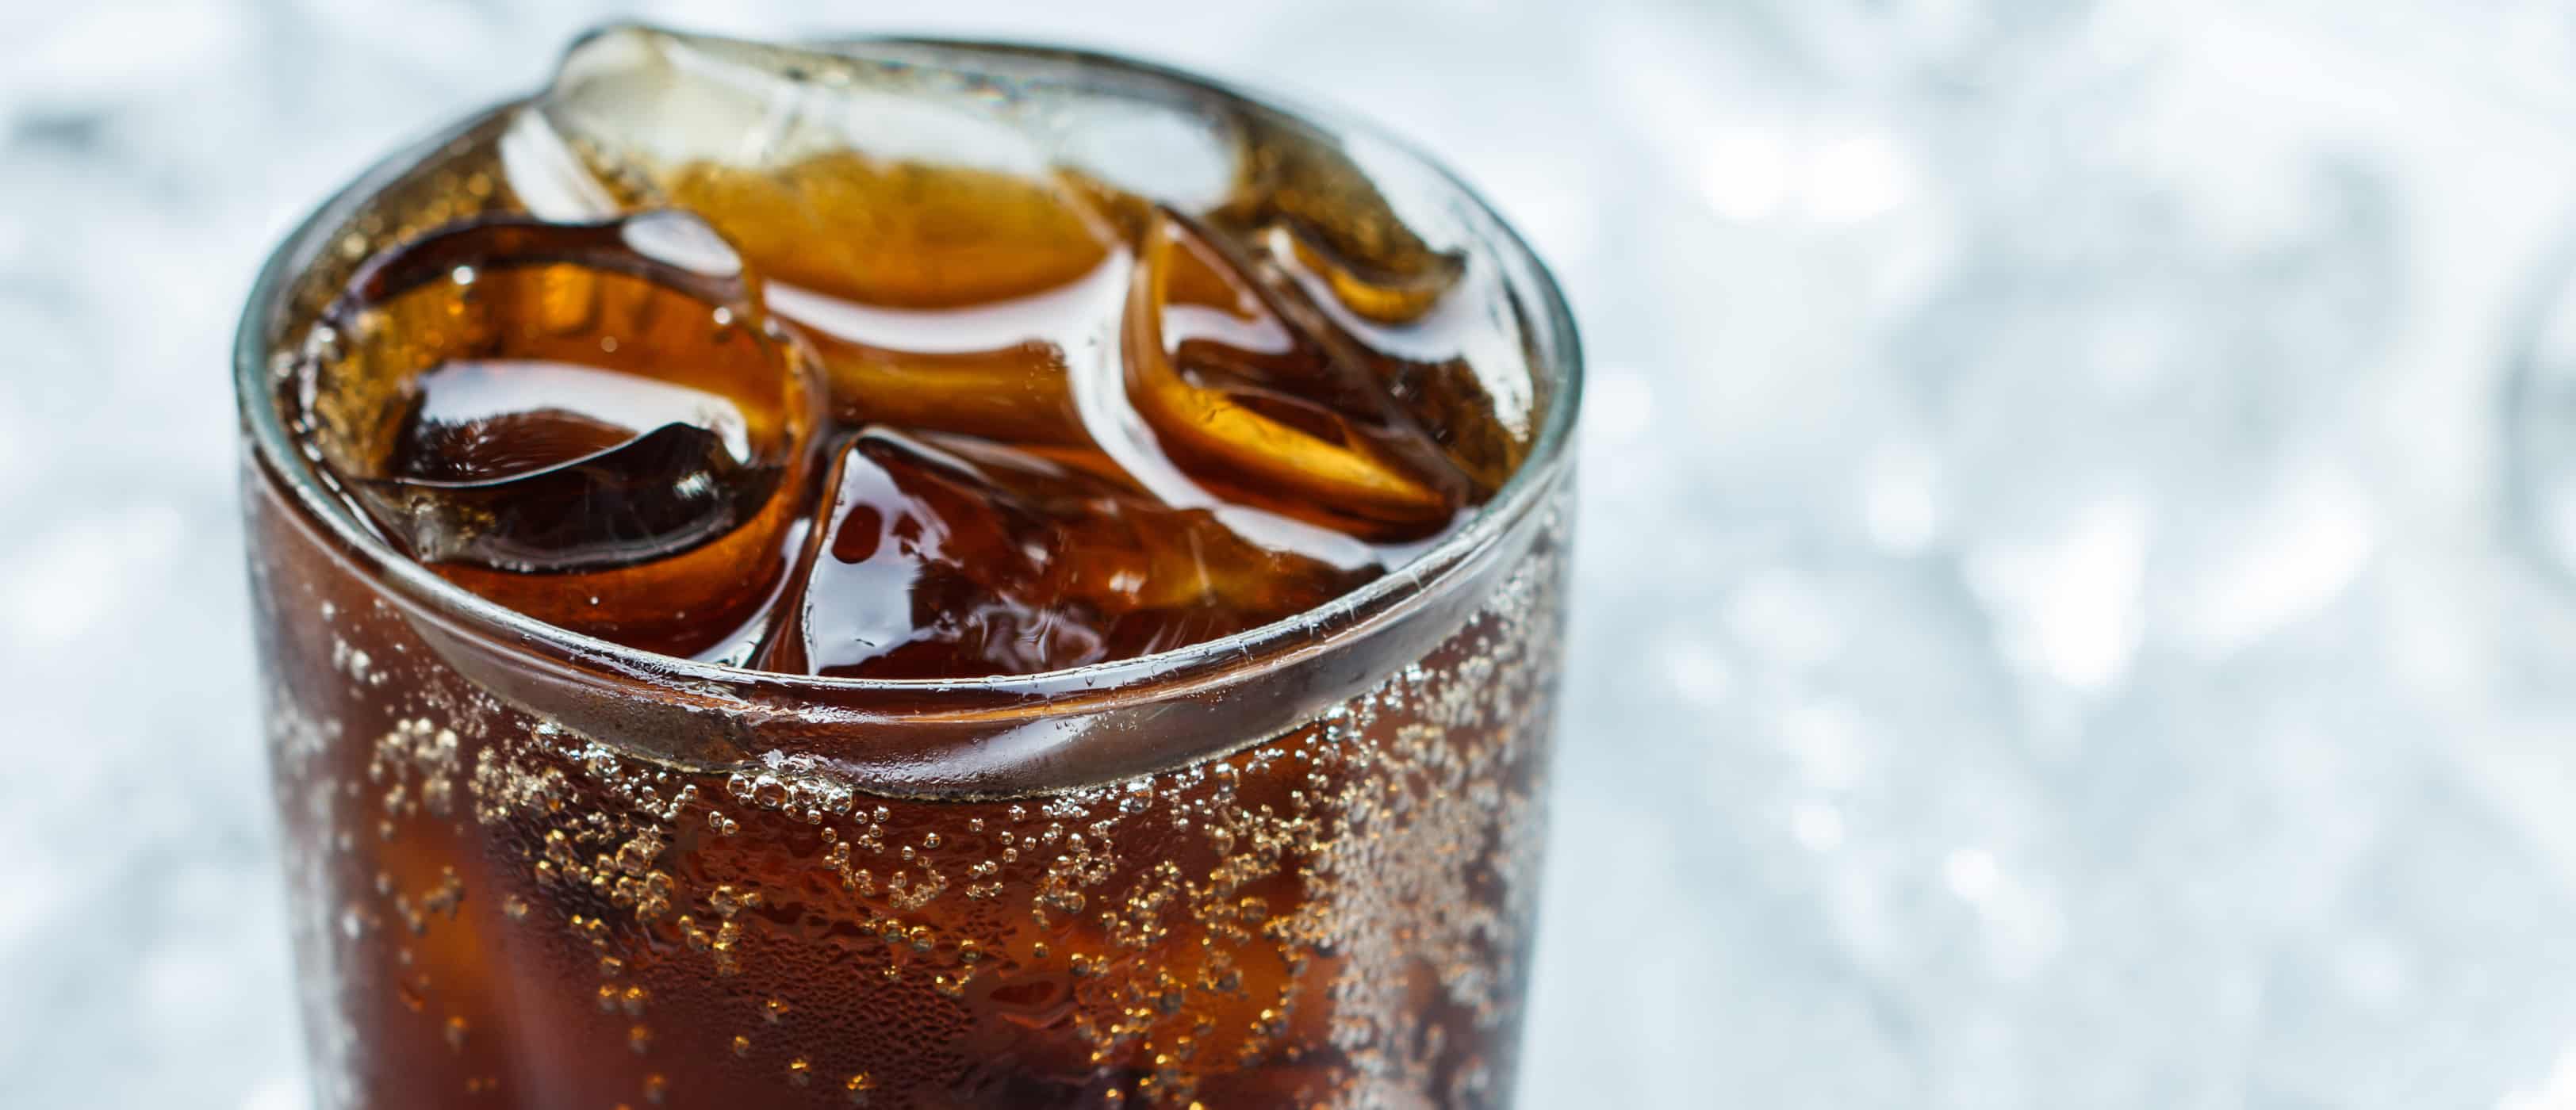 der Mythos der Gefahr des künstlichen Süßstoffs Aspartam